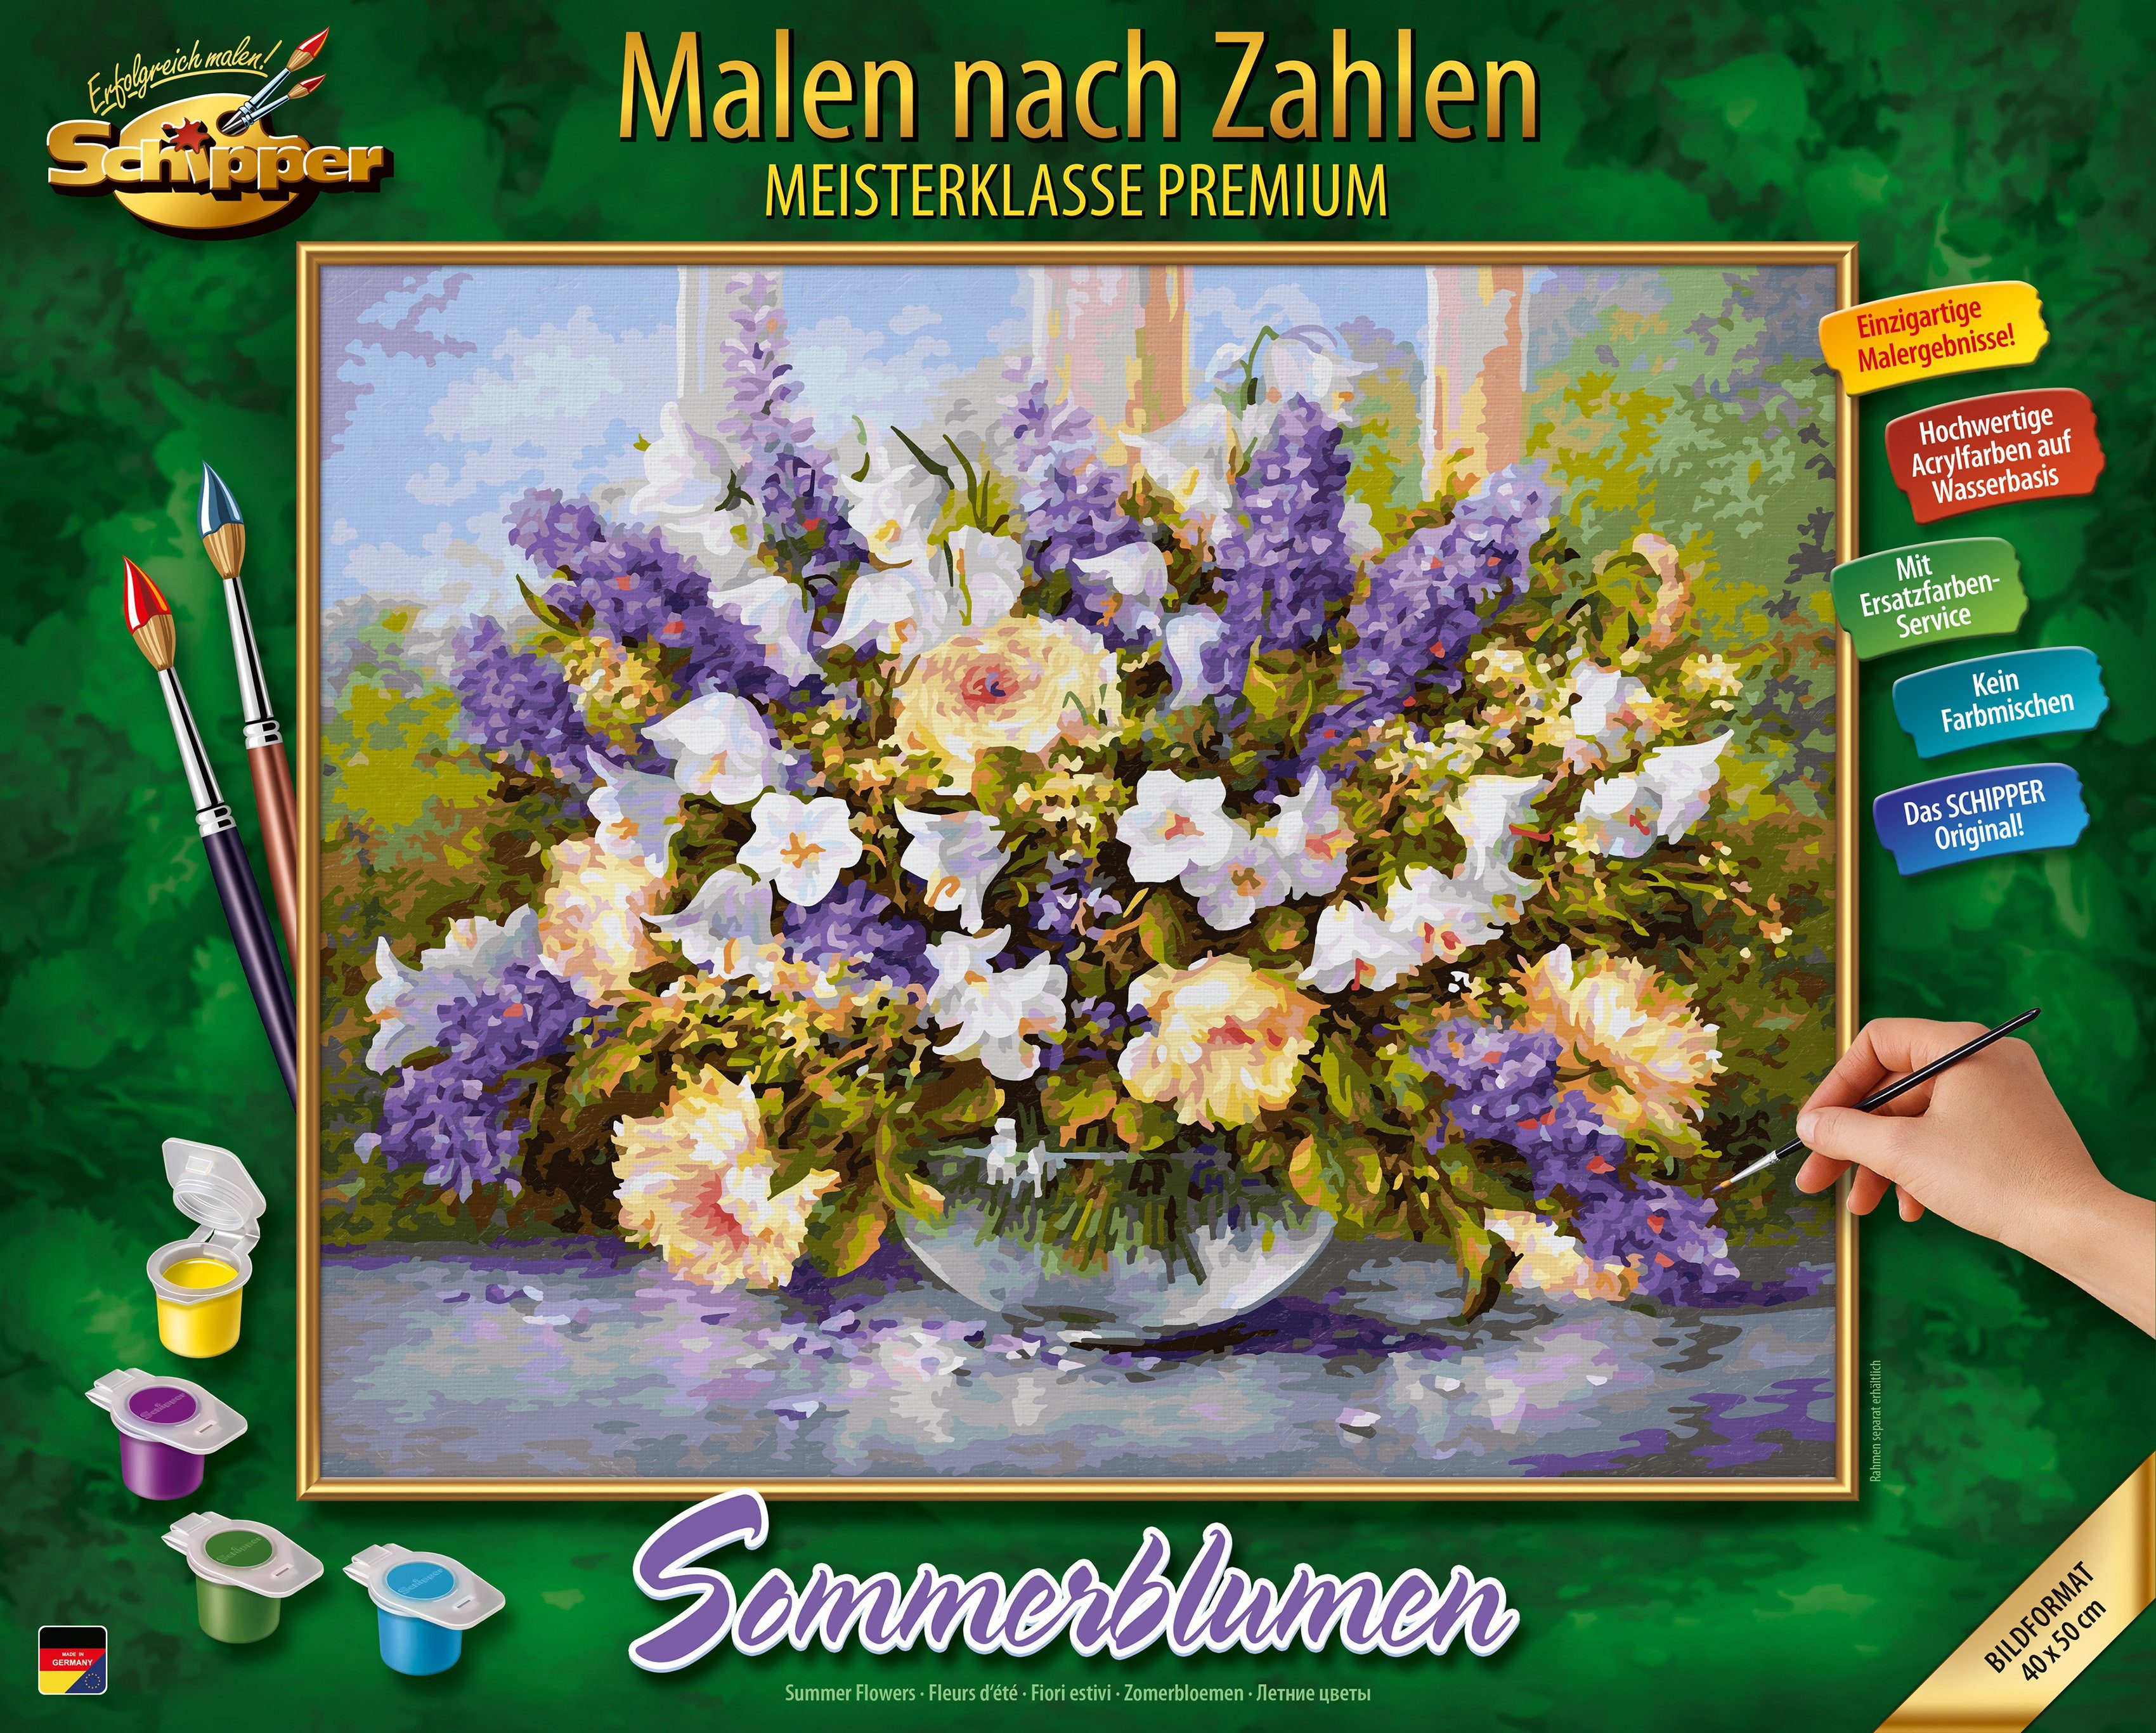 Schipper Malen nach Zahlen Blumenwiese Meisterklasse Premium Malvorlage 40x50 cm 